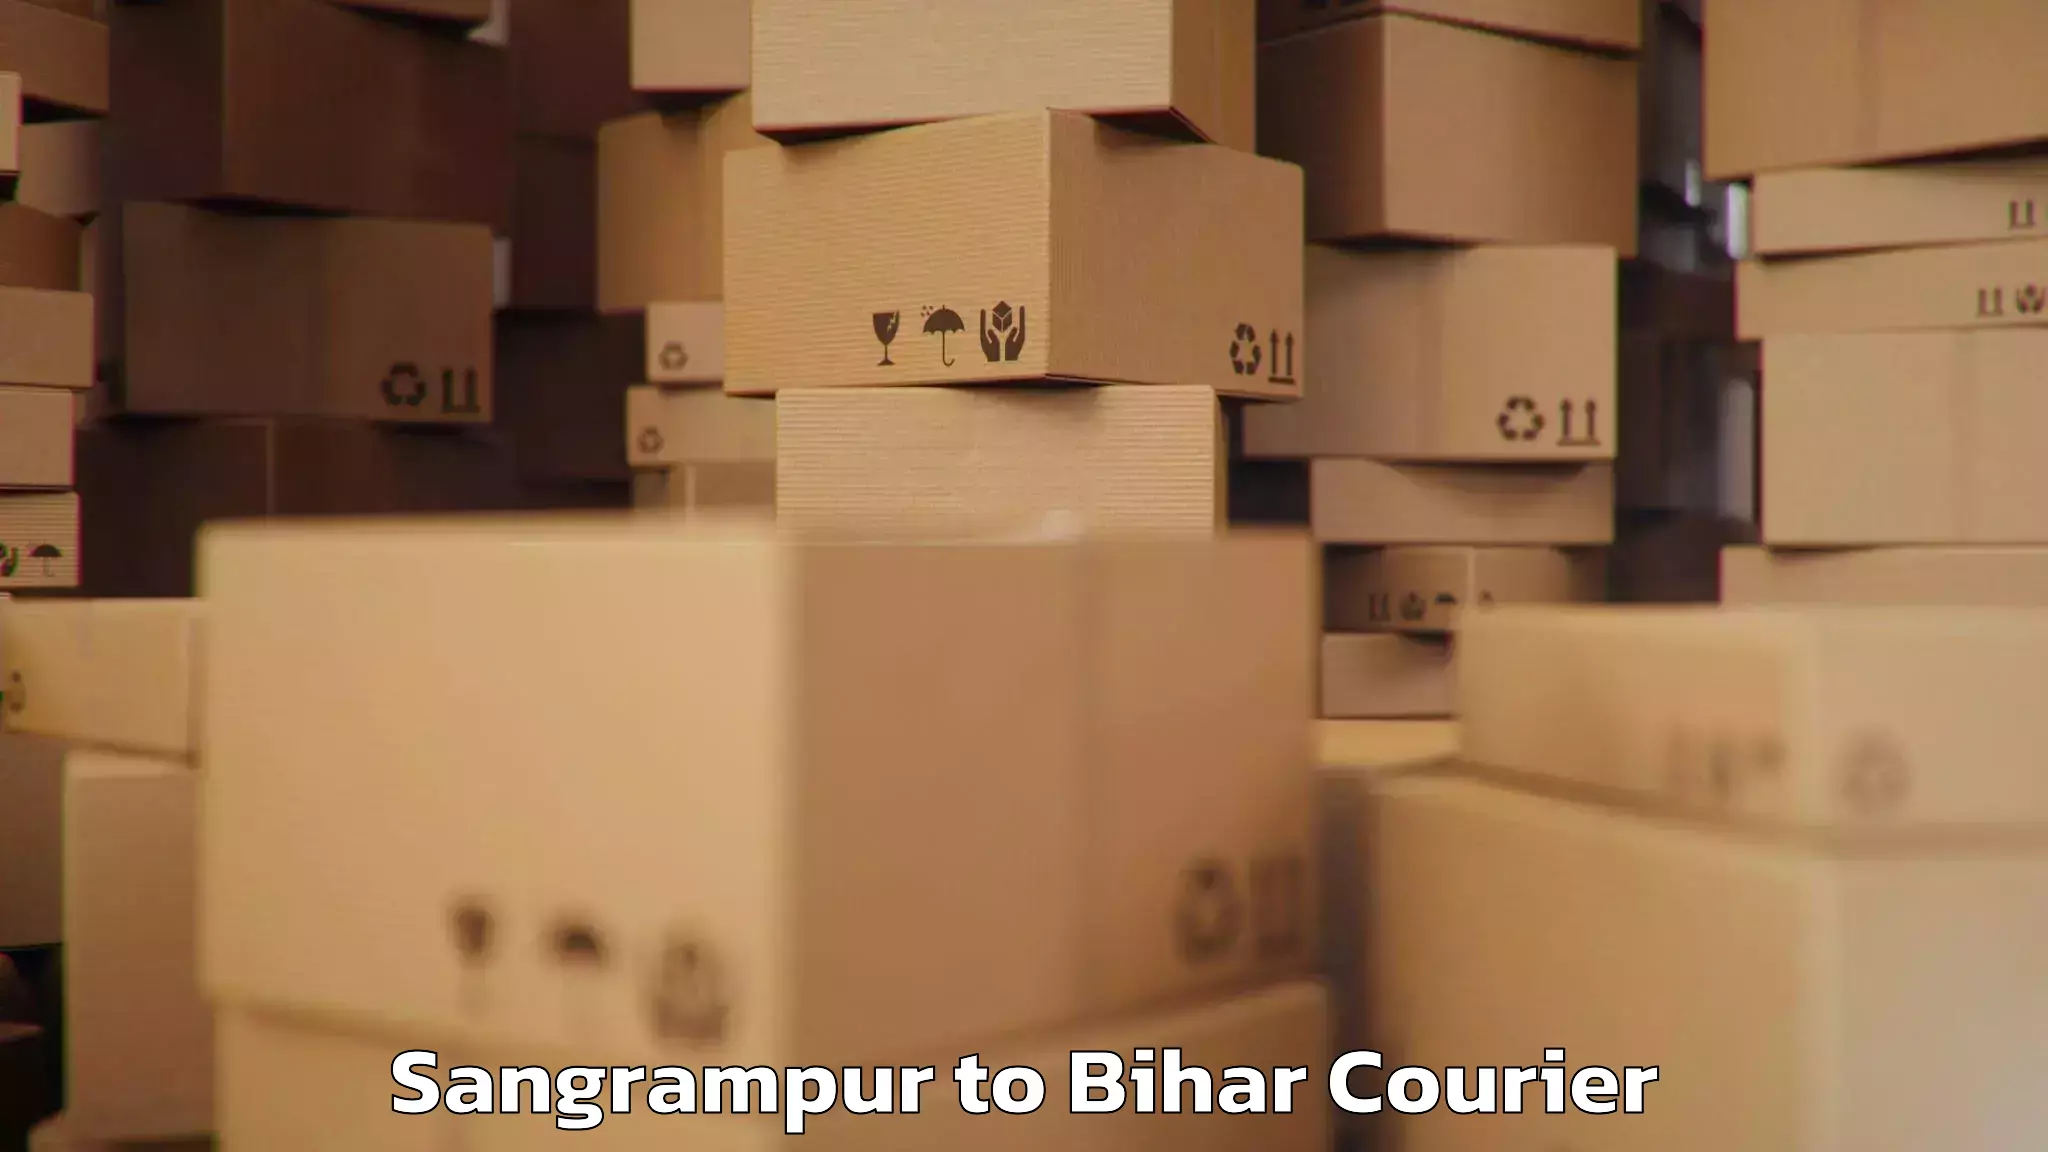 Luggage transport service Sangrampur to Madhepura